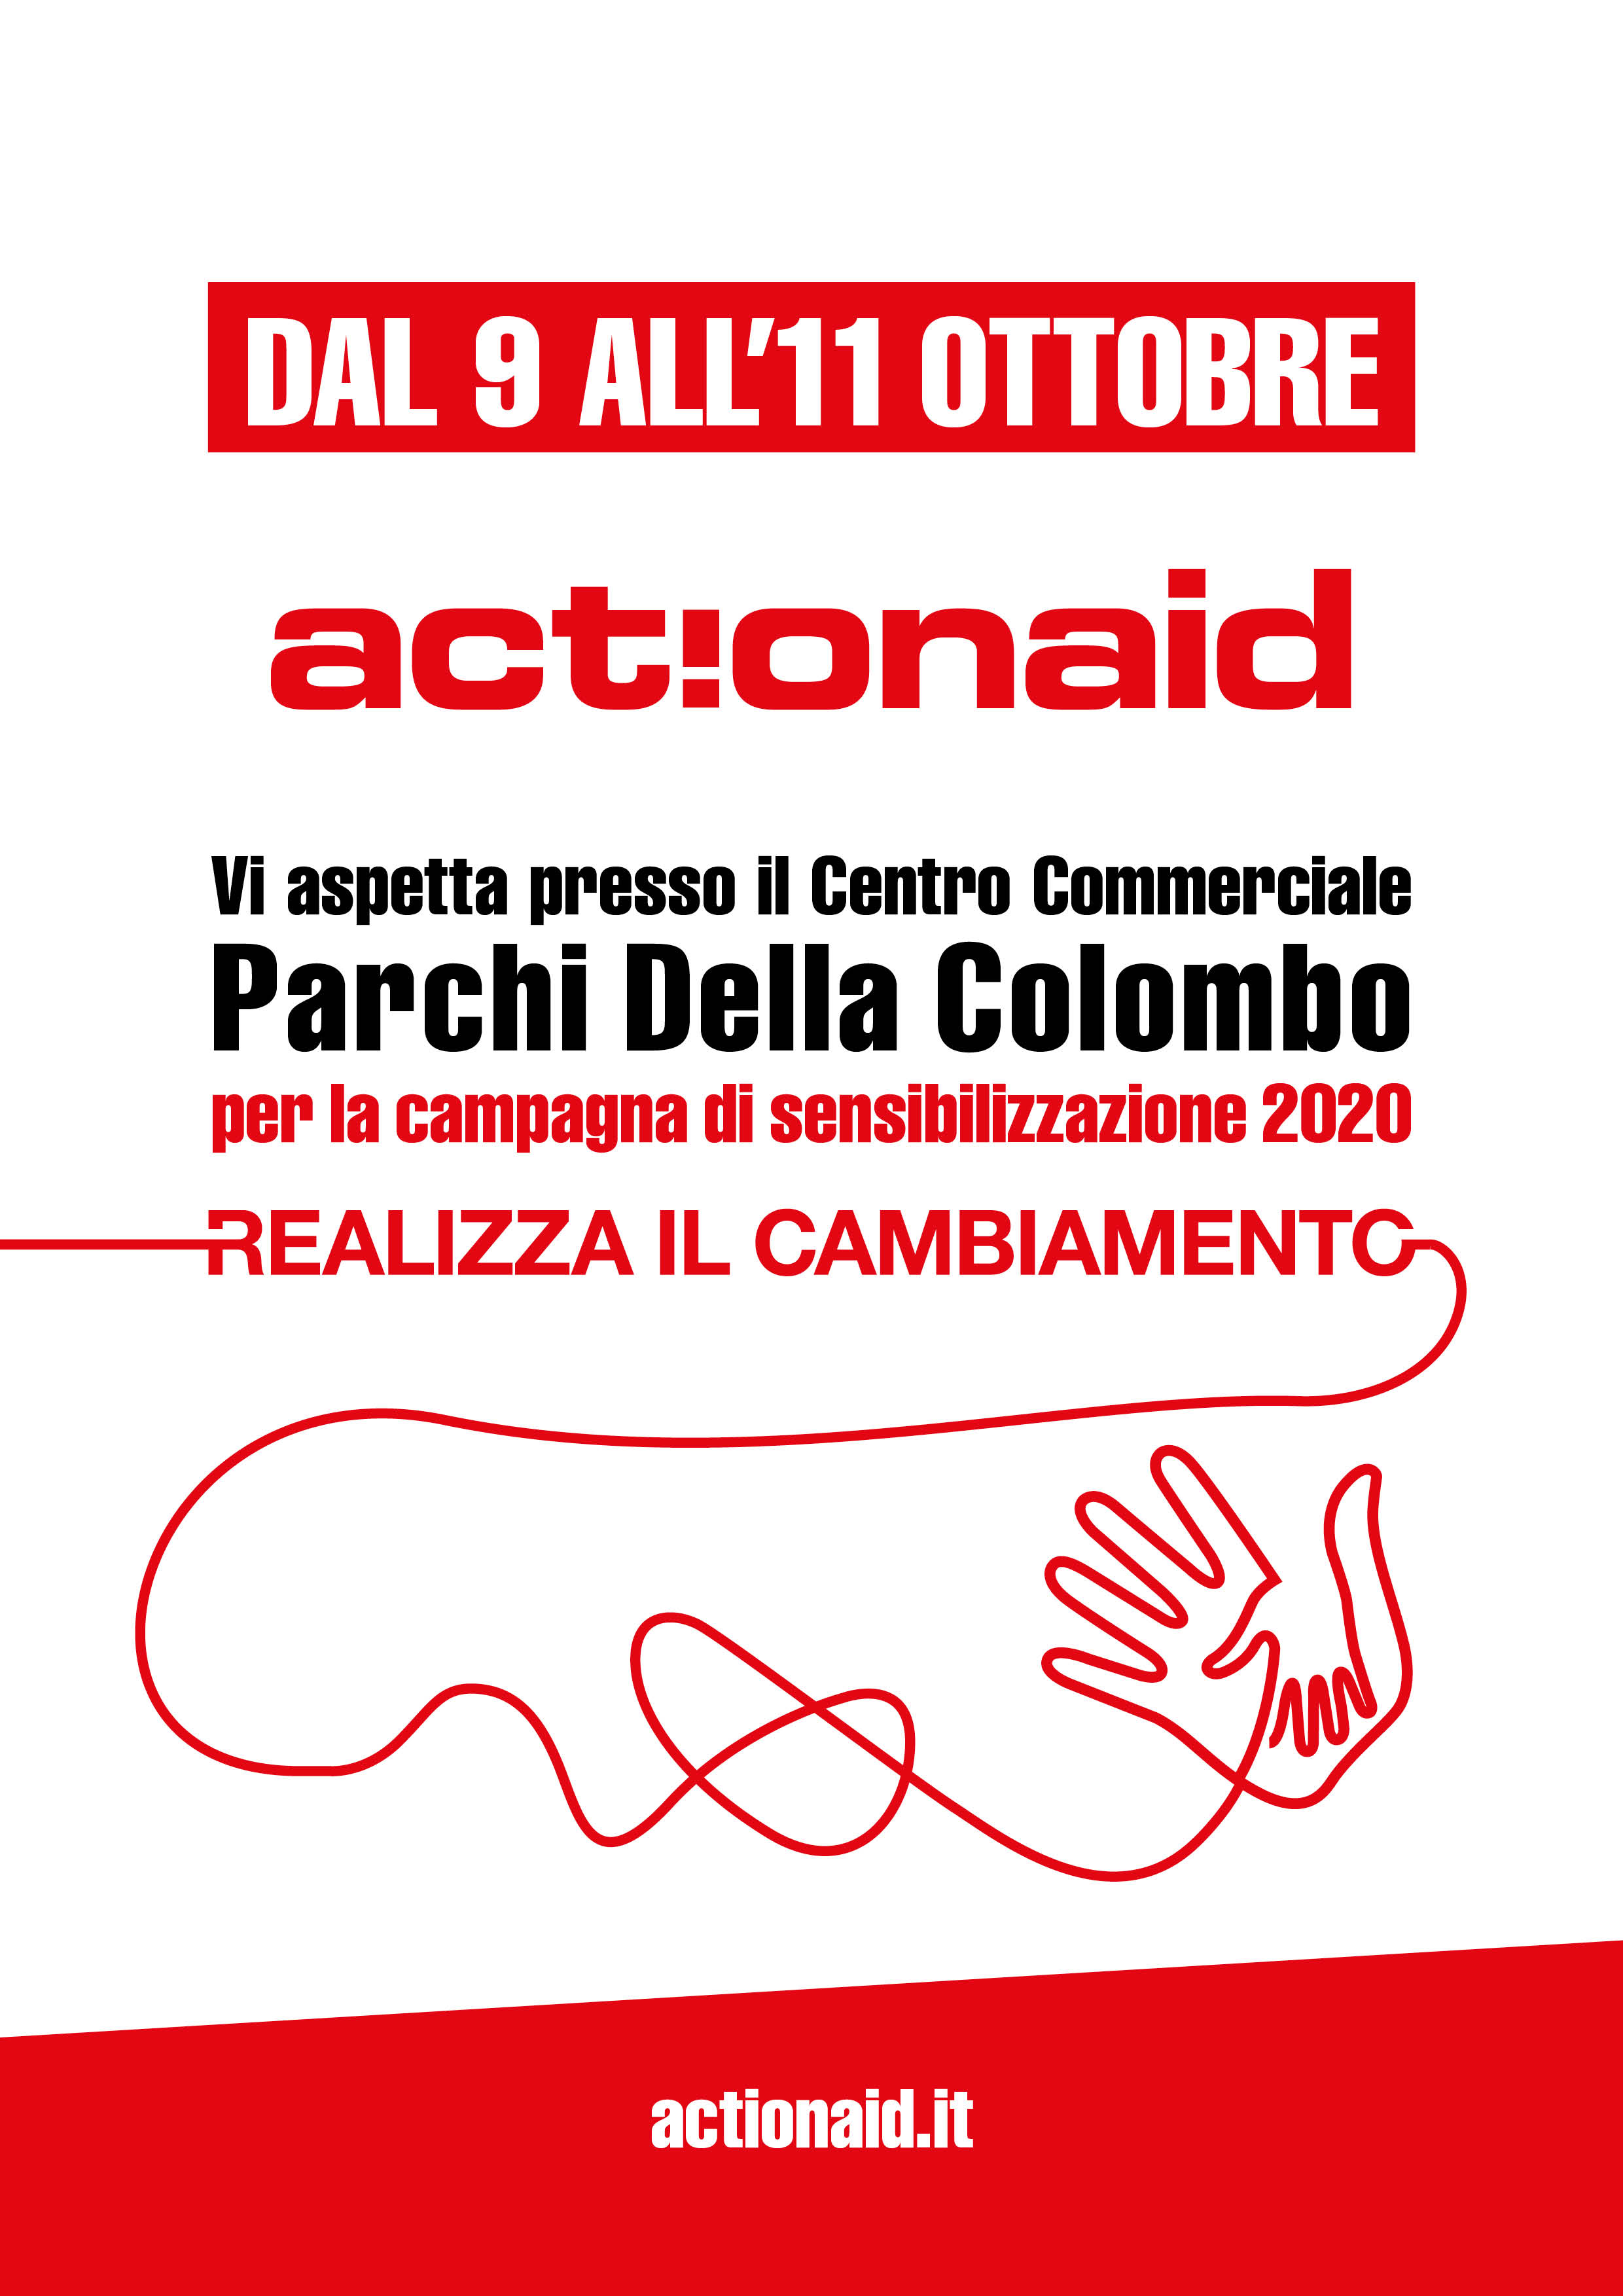 ACTION AID - CAMPAGNA SENSIBILIZZAZIONE 2020